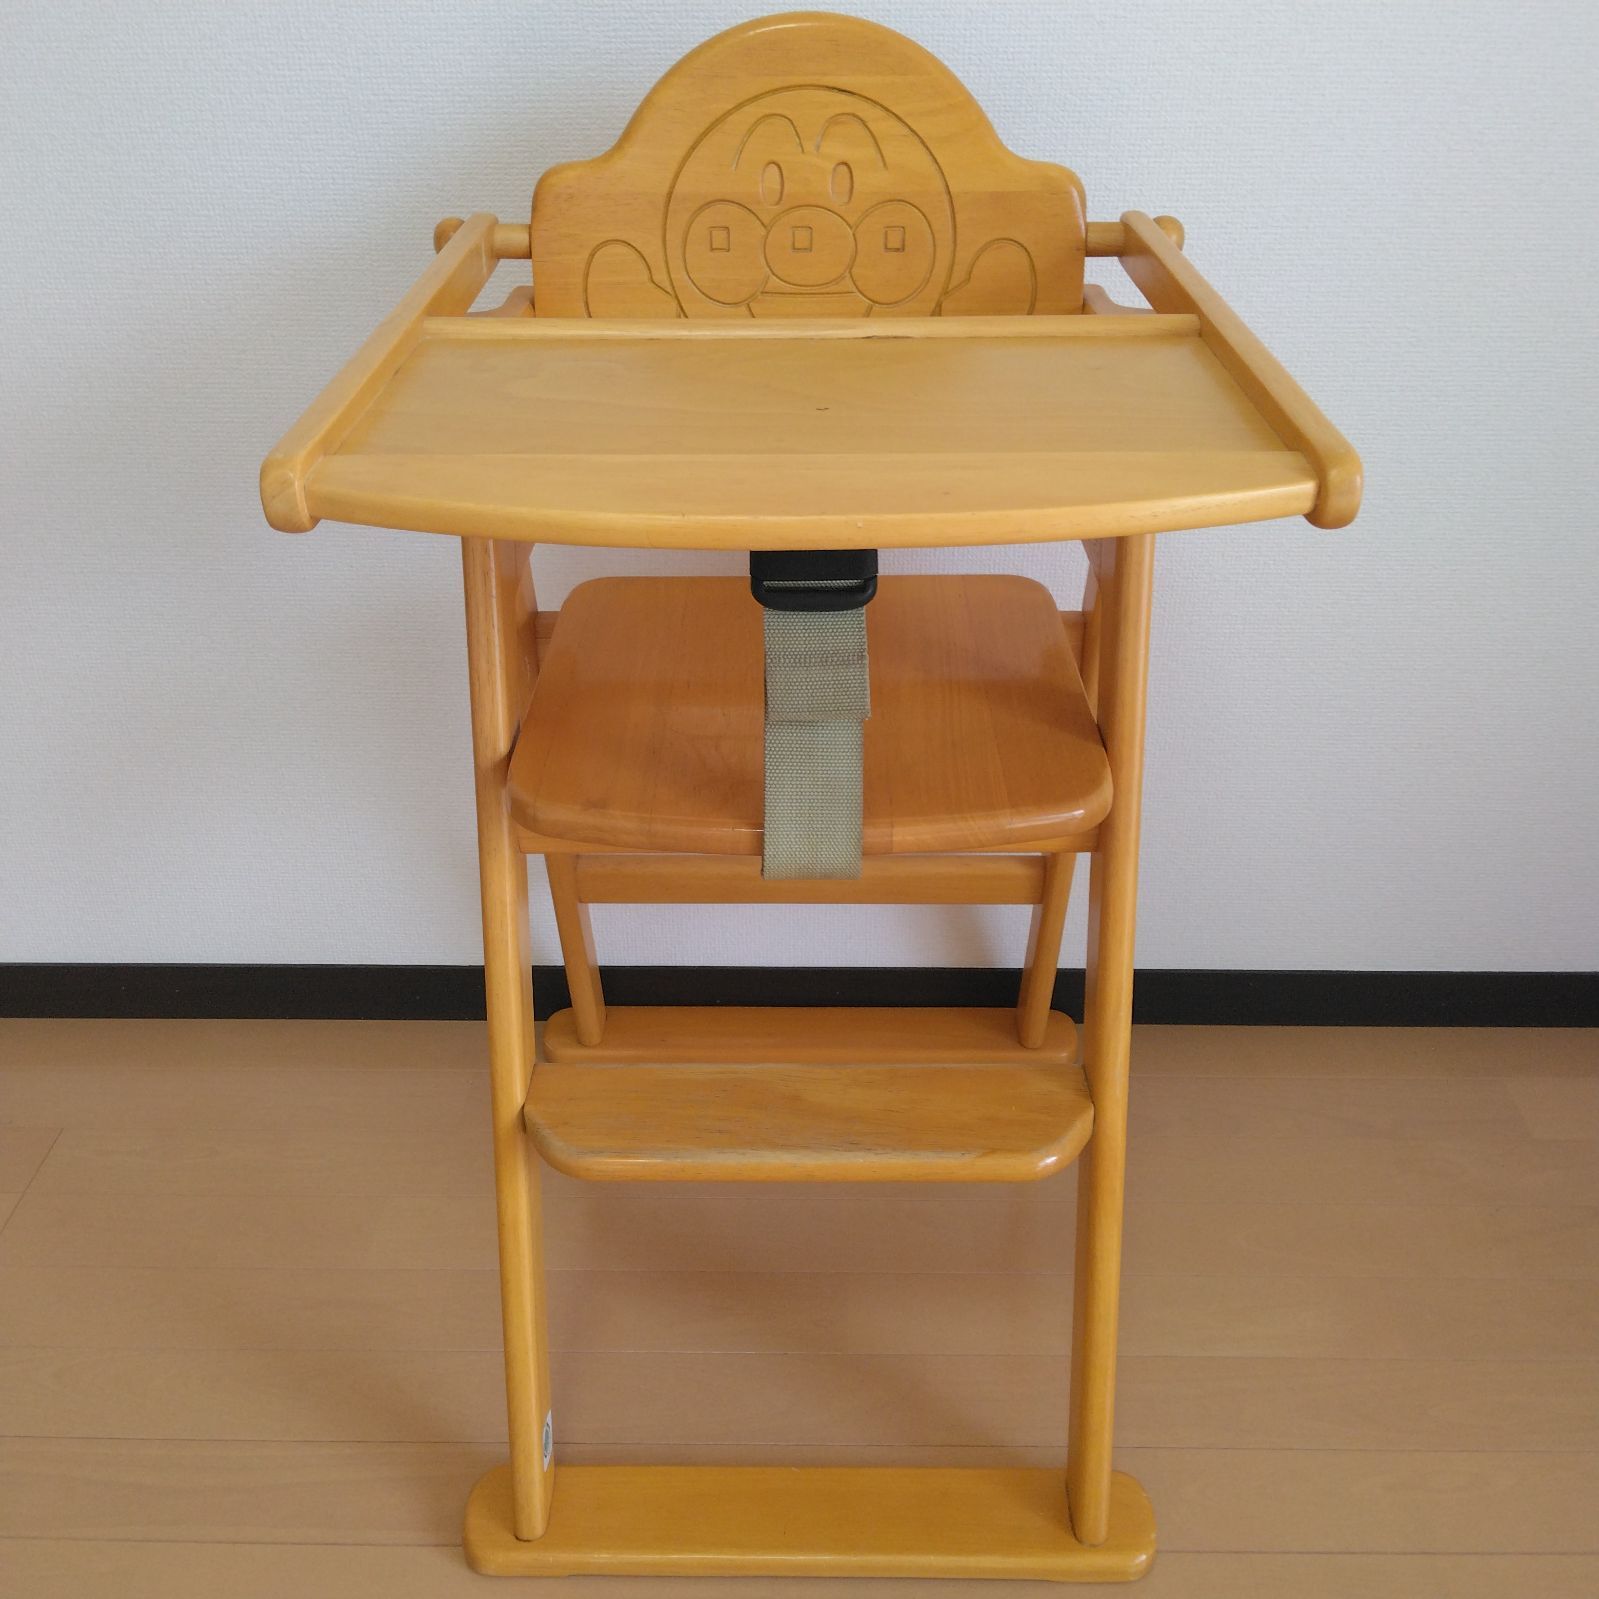 アンパンマン 木製ハイチェア ベビーチェア 椅子 - ベビー家具/寝具 